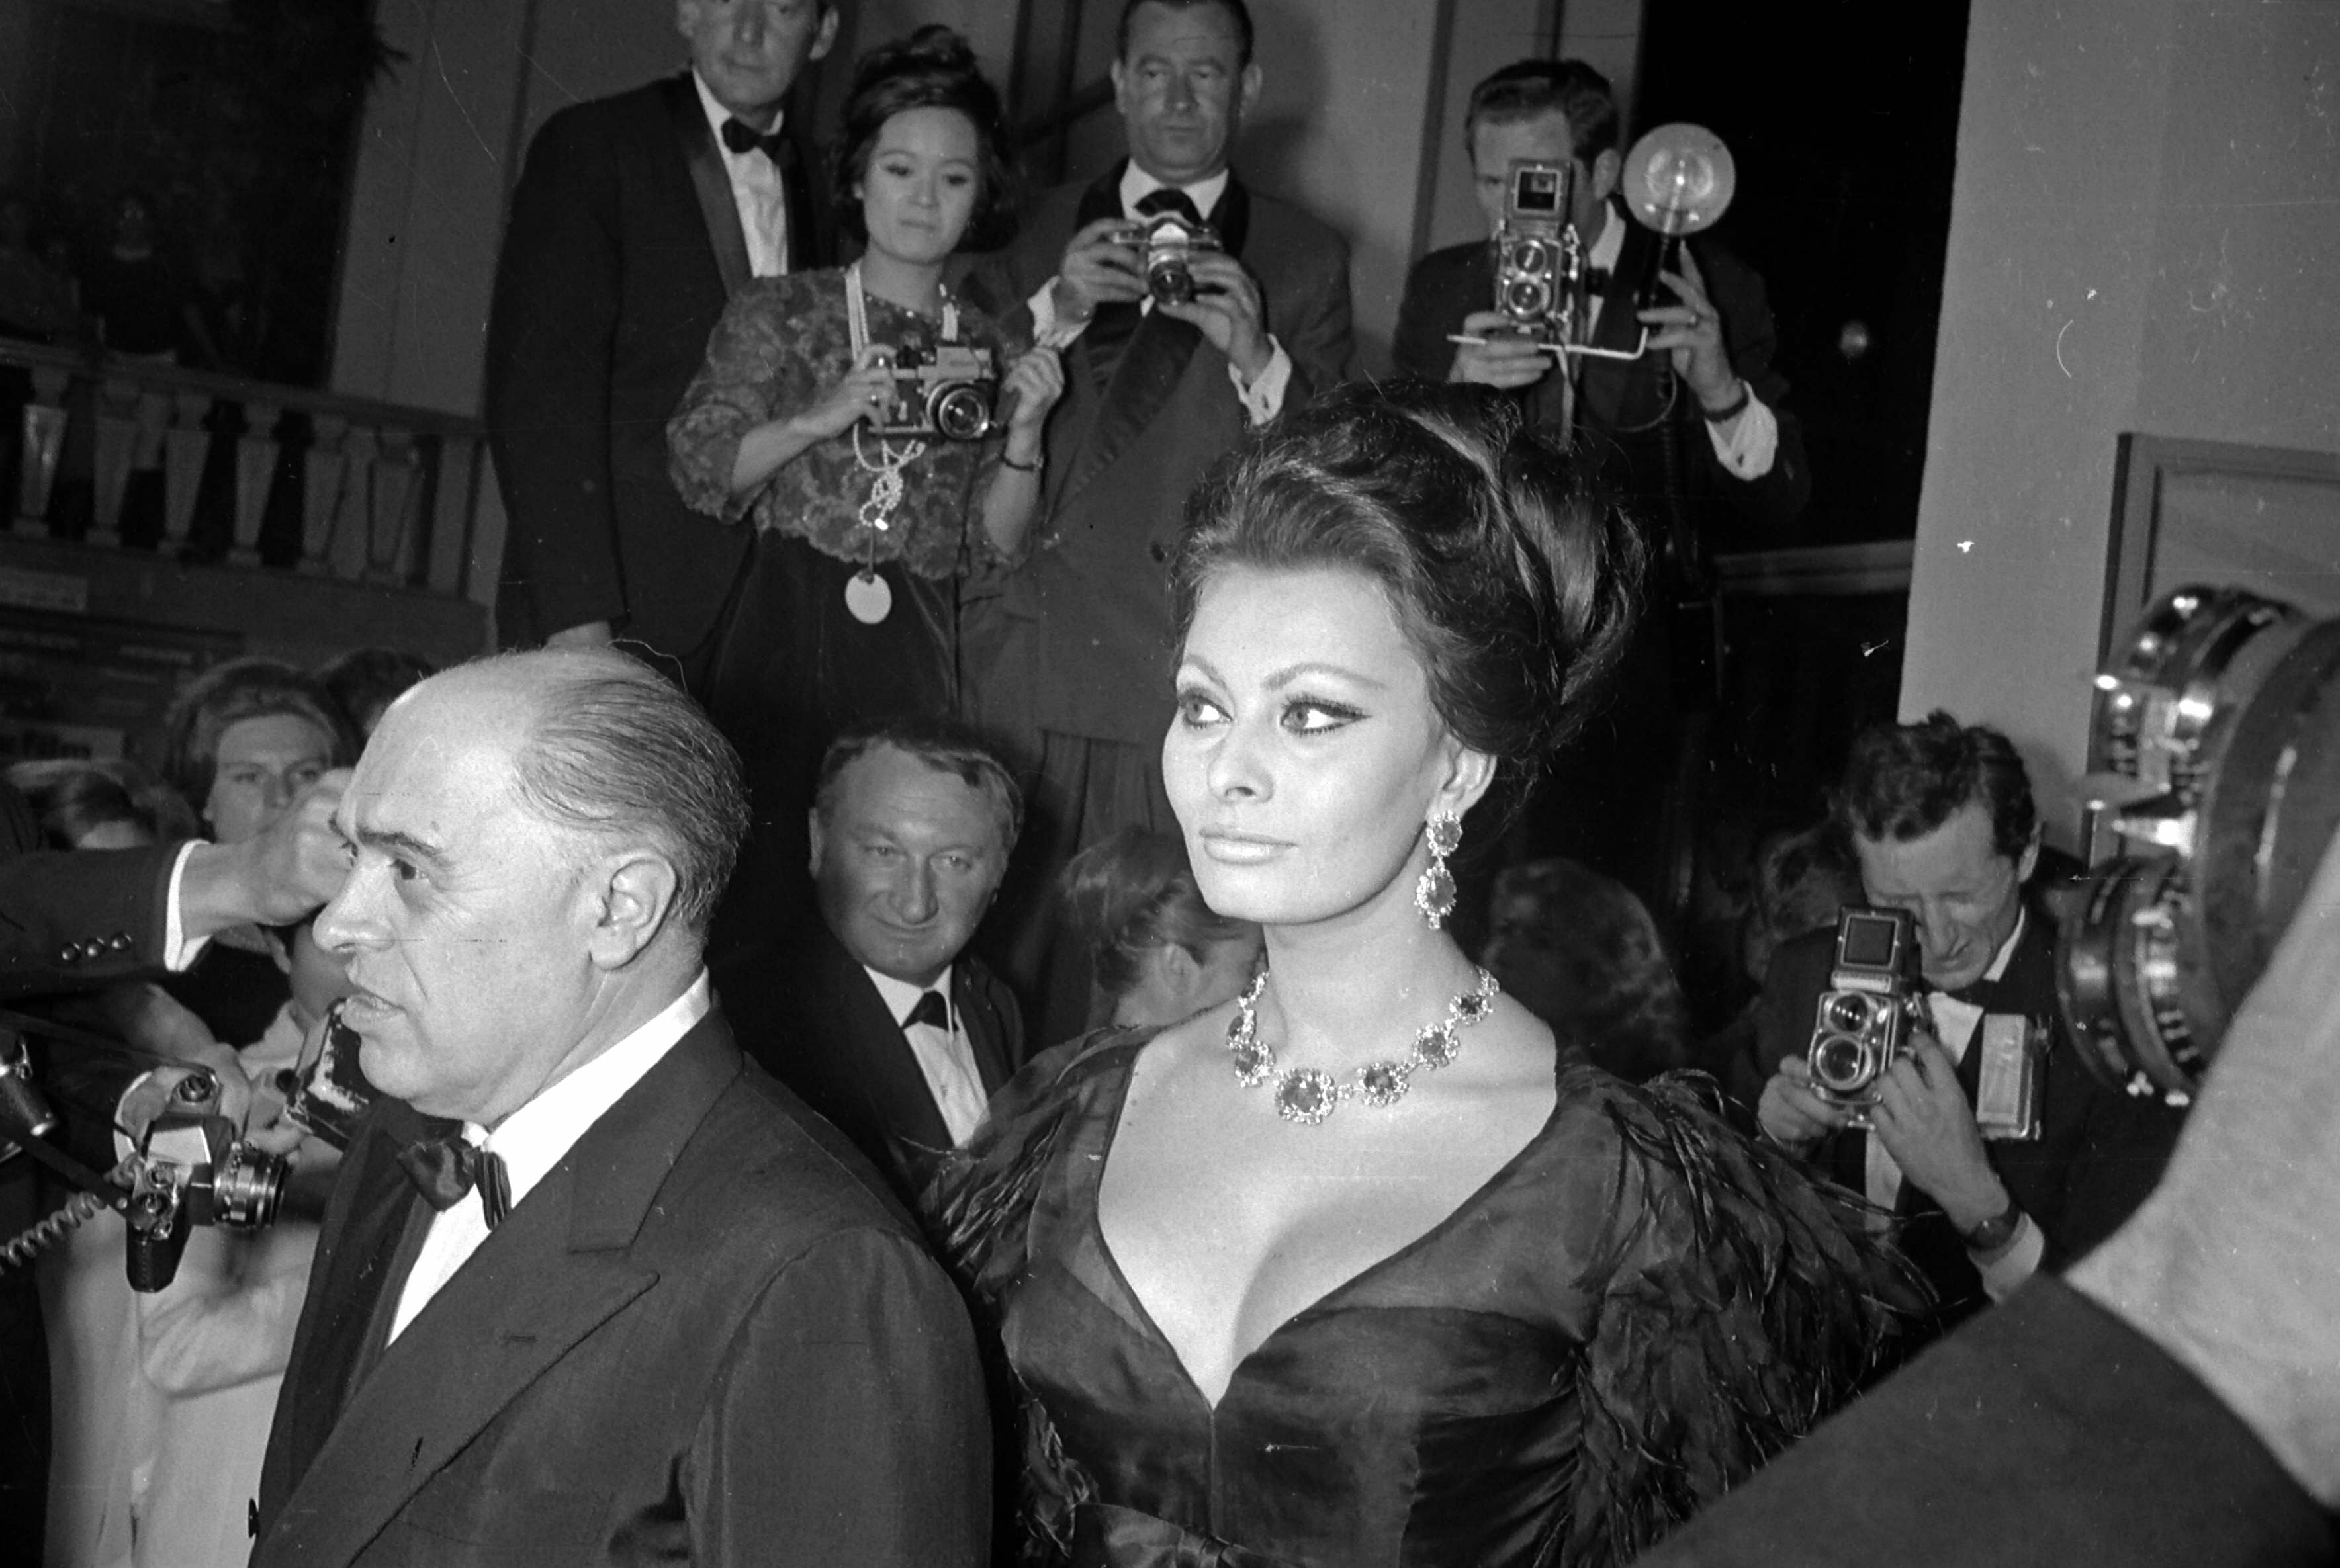 Carlo Ponti, italienischer Filmproduzent und Sophia Loren, italienische Schauspielerin, seine Frau während der Festspiele von Cannes, 1966. | Quelle: Getty Images